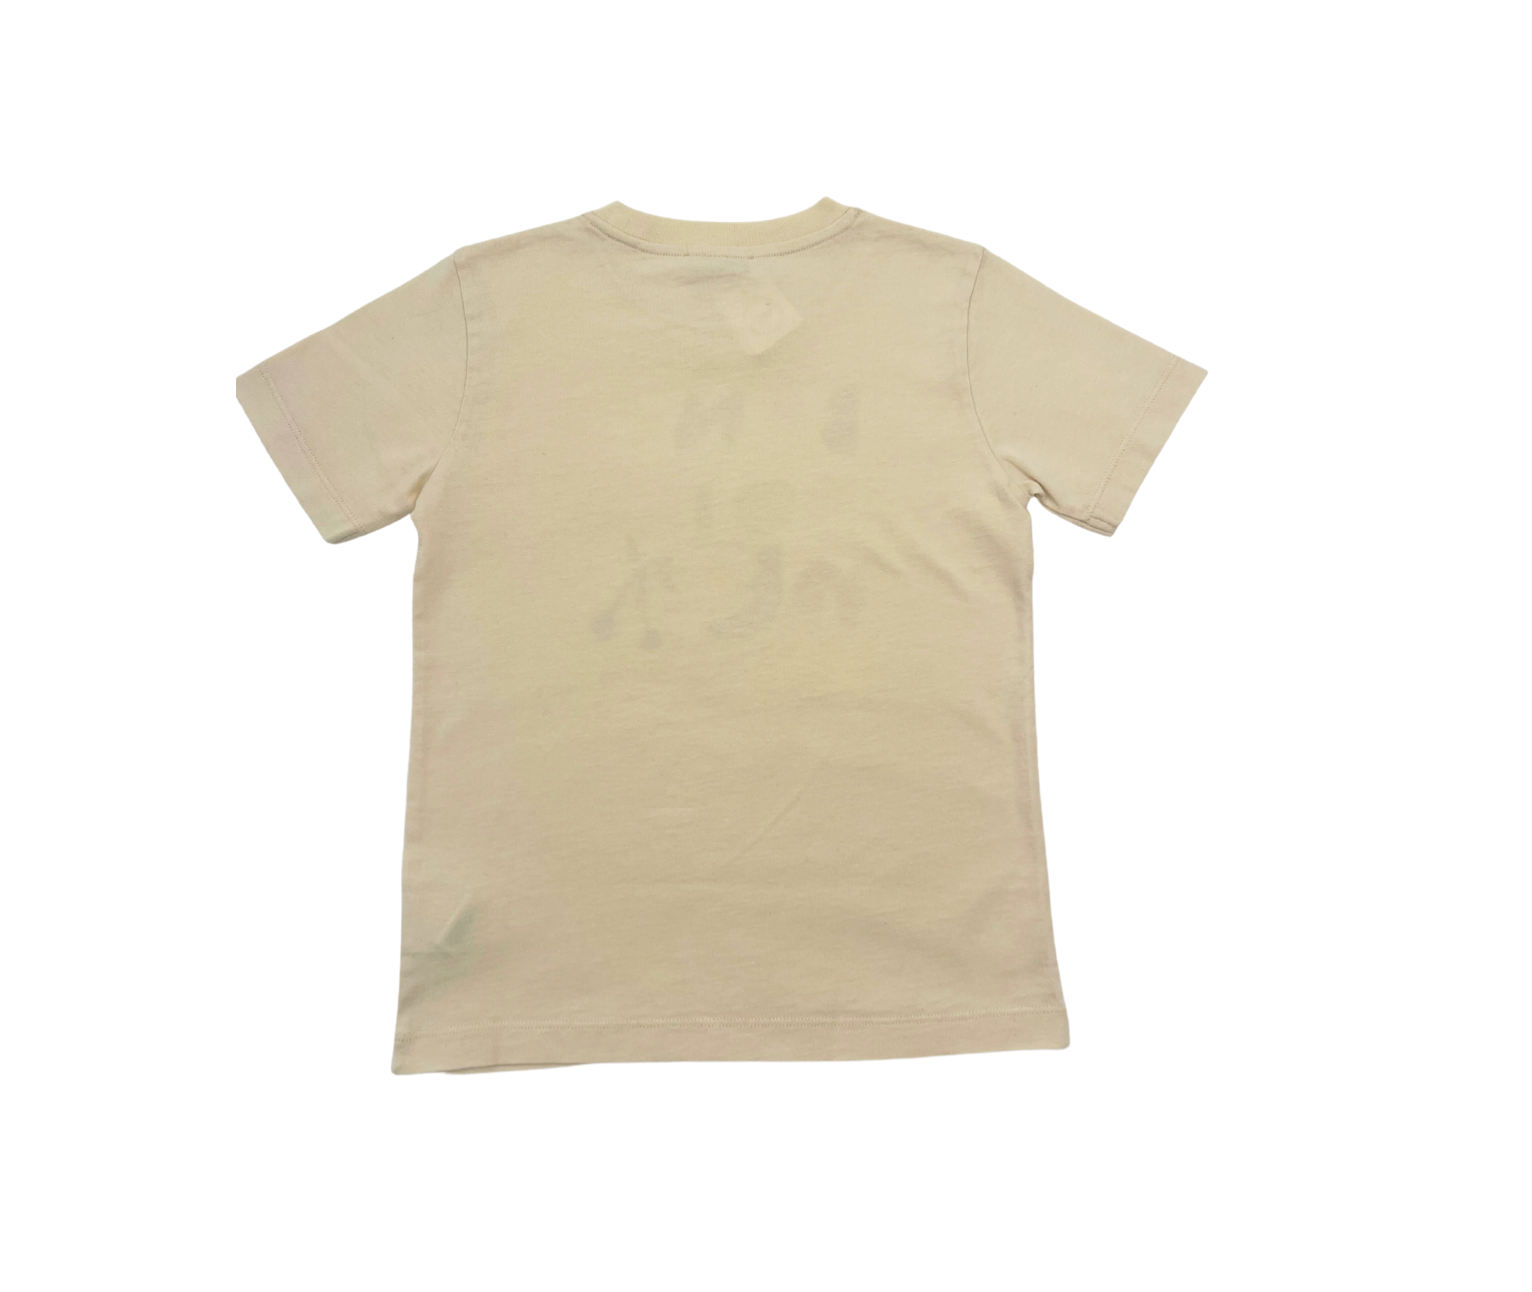 BONPOINT - T-shirt beige "Bonpoint" - 6 ans